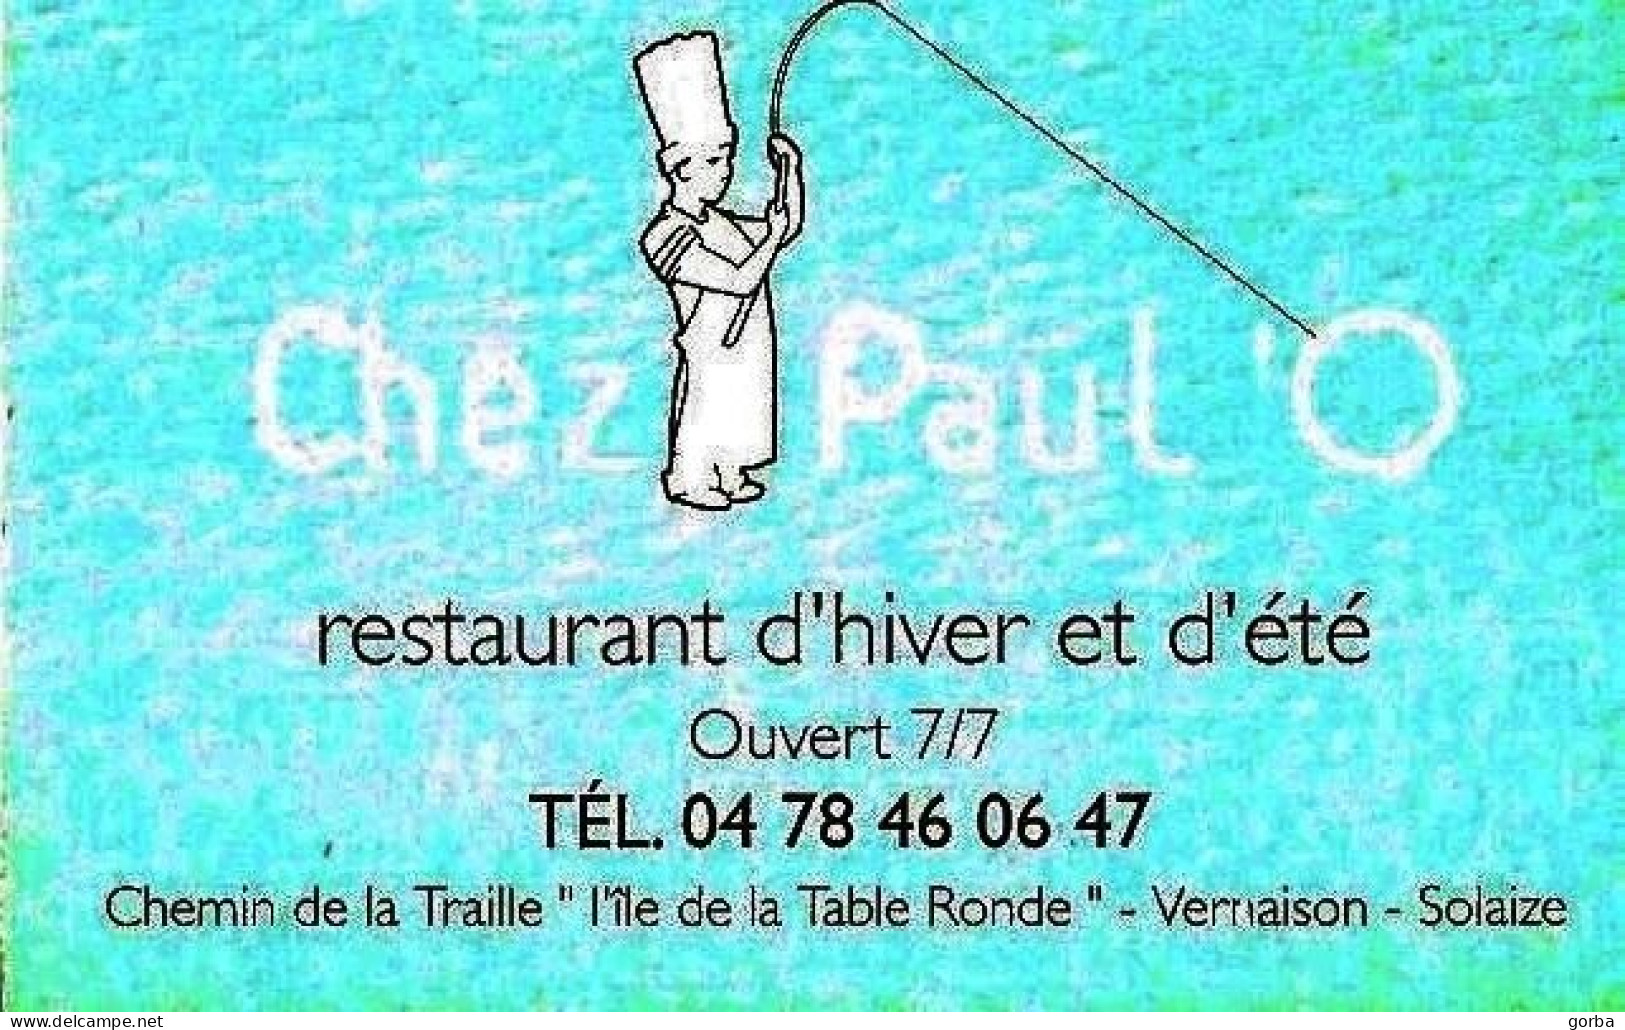 *Carte Visite Restaurant - Chez PAUL ' O à Vernaison-Solaize (69) - Visitekaartjes